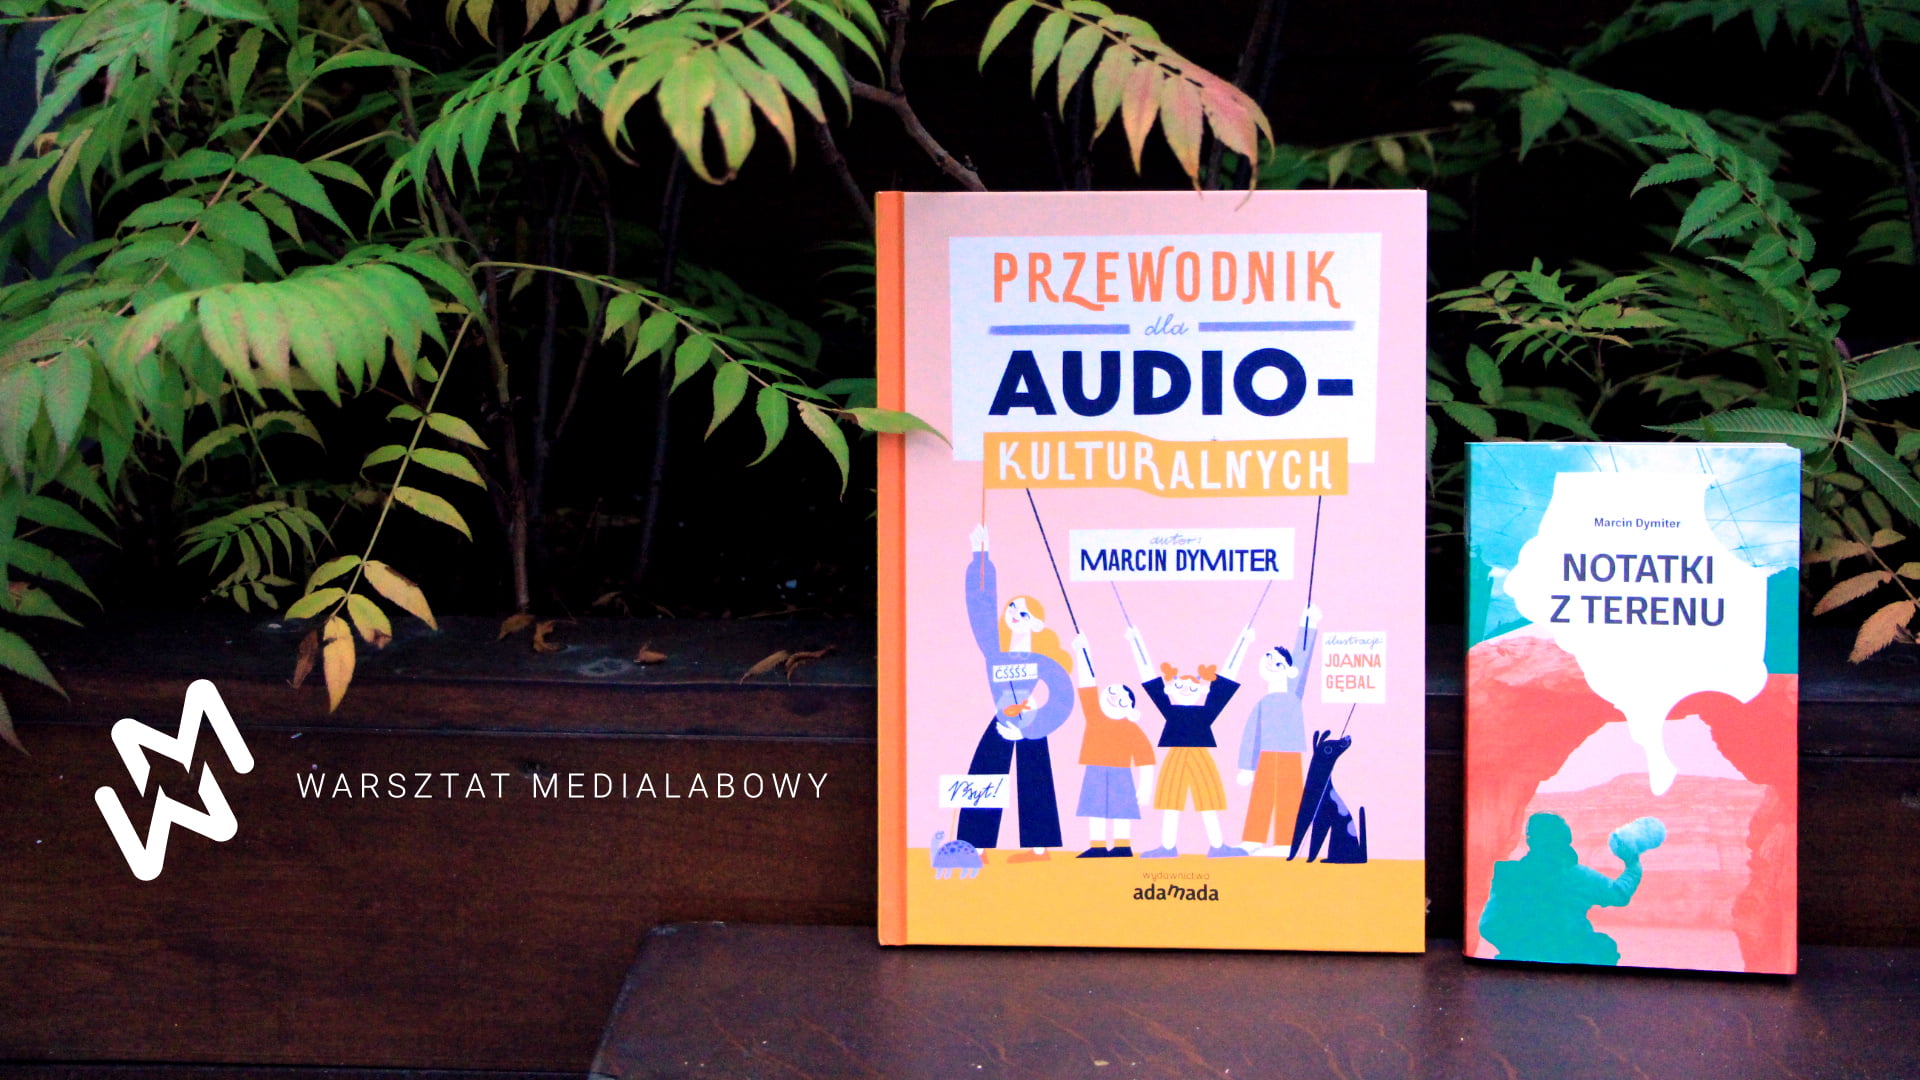 Zdjęcie dwóch książek - Przewodnik dla Audio-kulturalnych, Notatki z terenu. Po lewej stronie logo warsztat medialabowy.